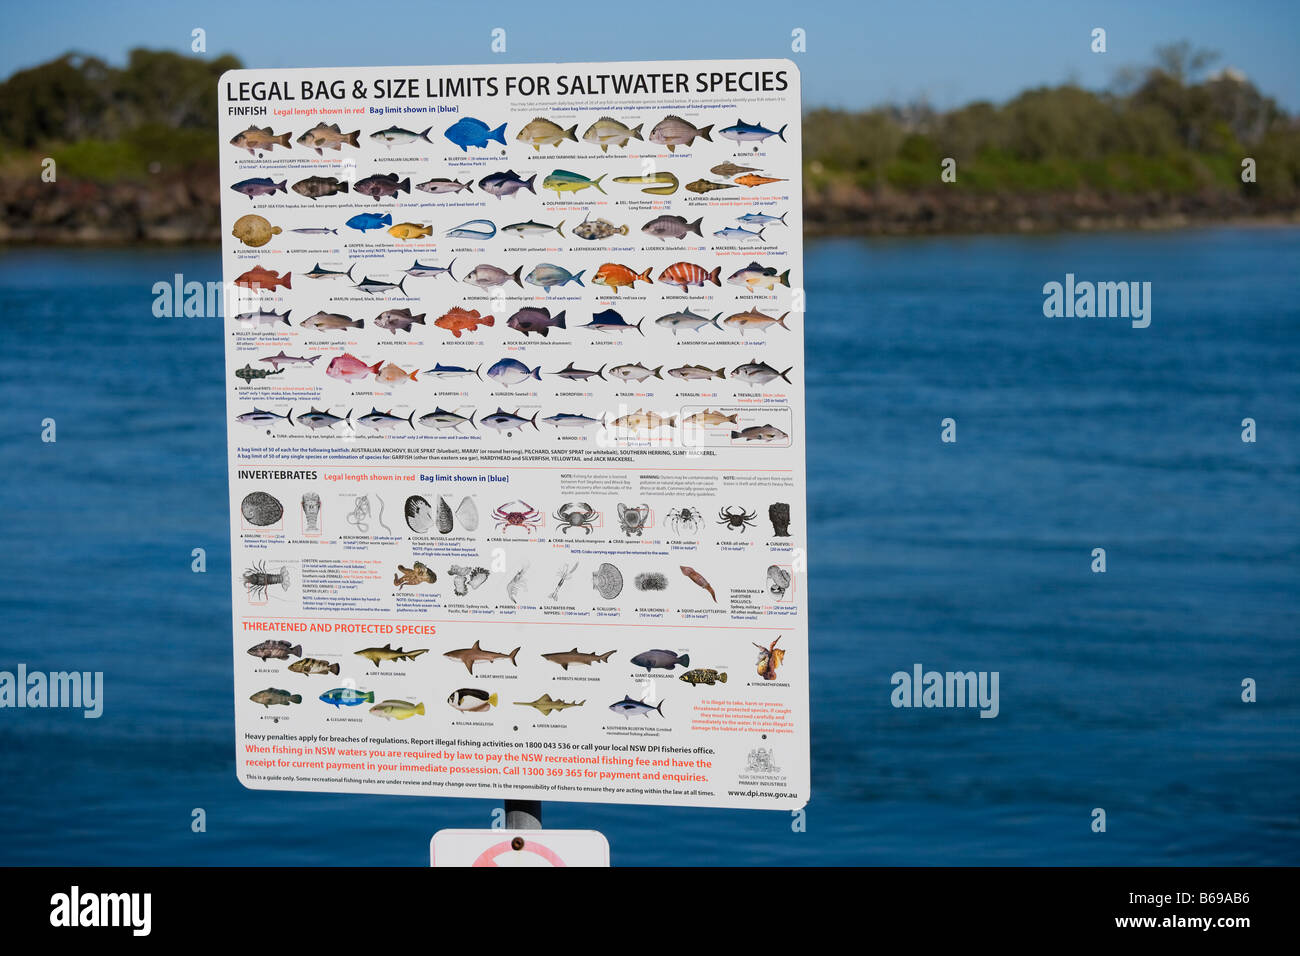 Bolsa legal y los límites de tamaño de los peces de agua salada la pesca en el Océano Pacífico australiano en Coolangatta Gold Coast y Tweed Heads Foto de stock